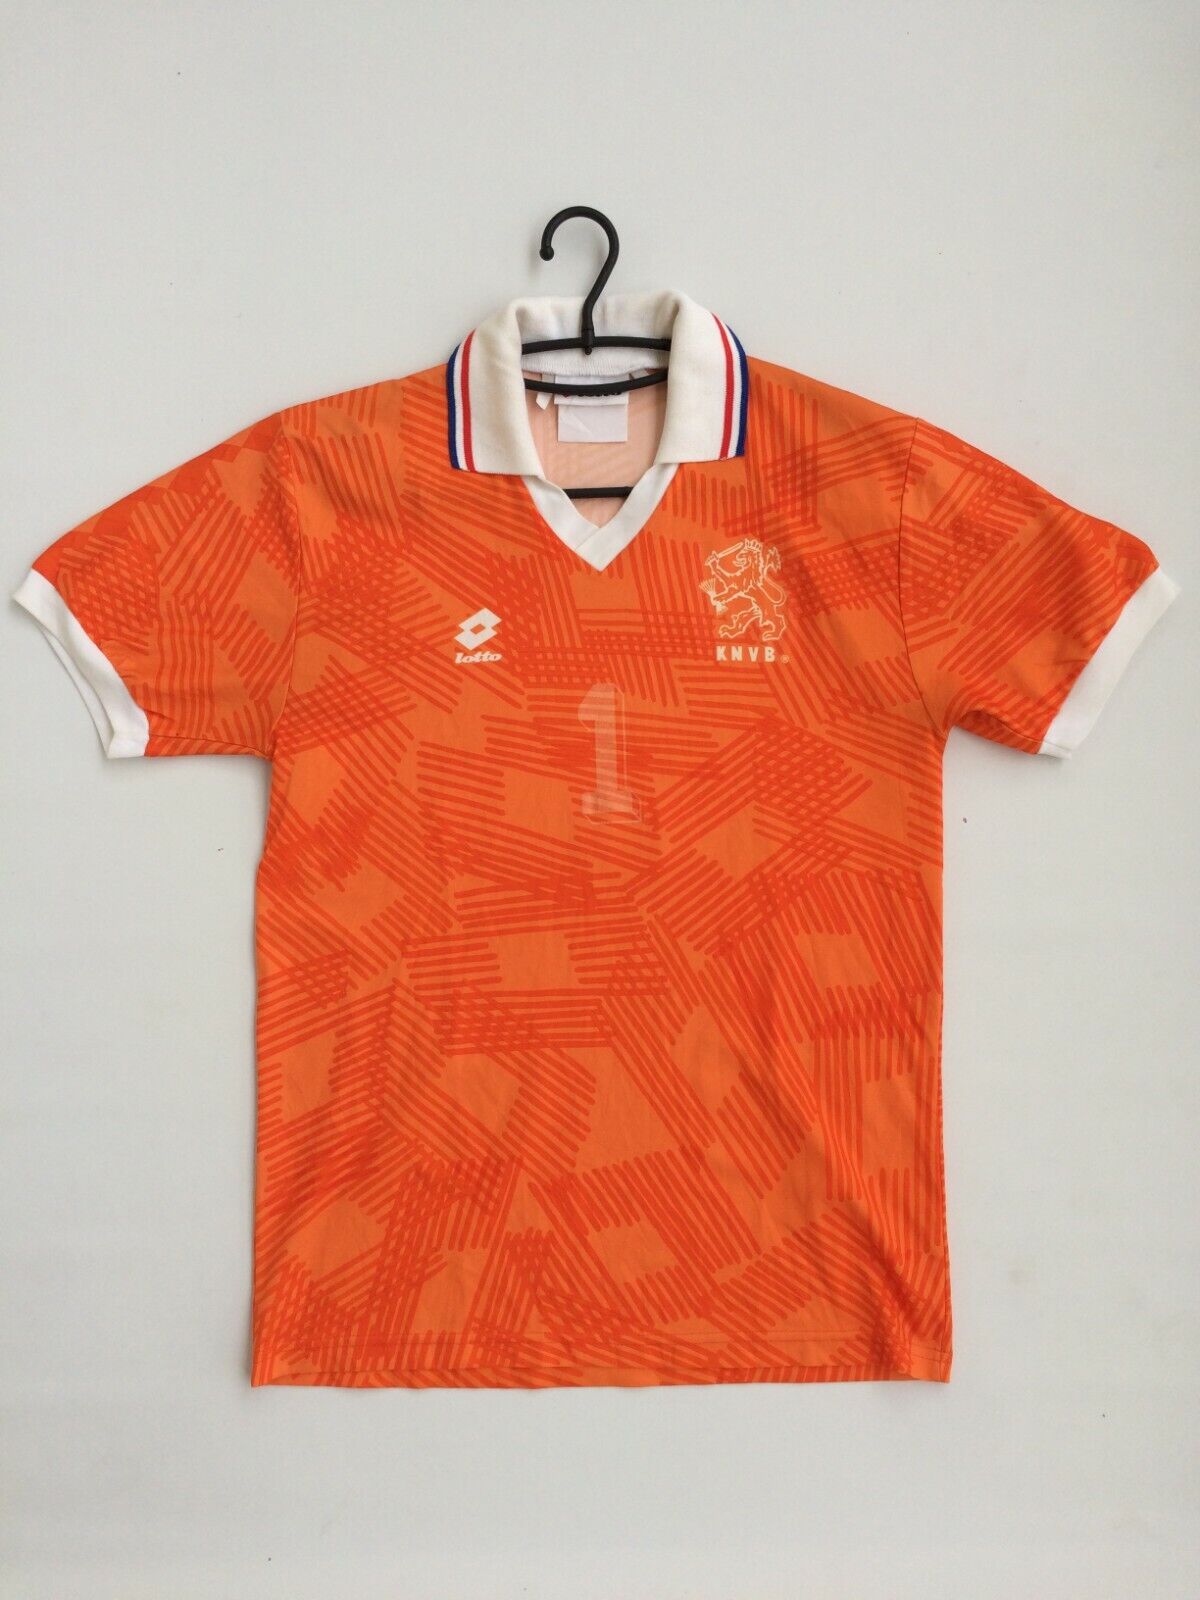 Postbode Pasen Watt Original Lotto Holland Home 1992-1994 Netherlands Dutch Voetbal Football  Shirt S | eBay